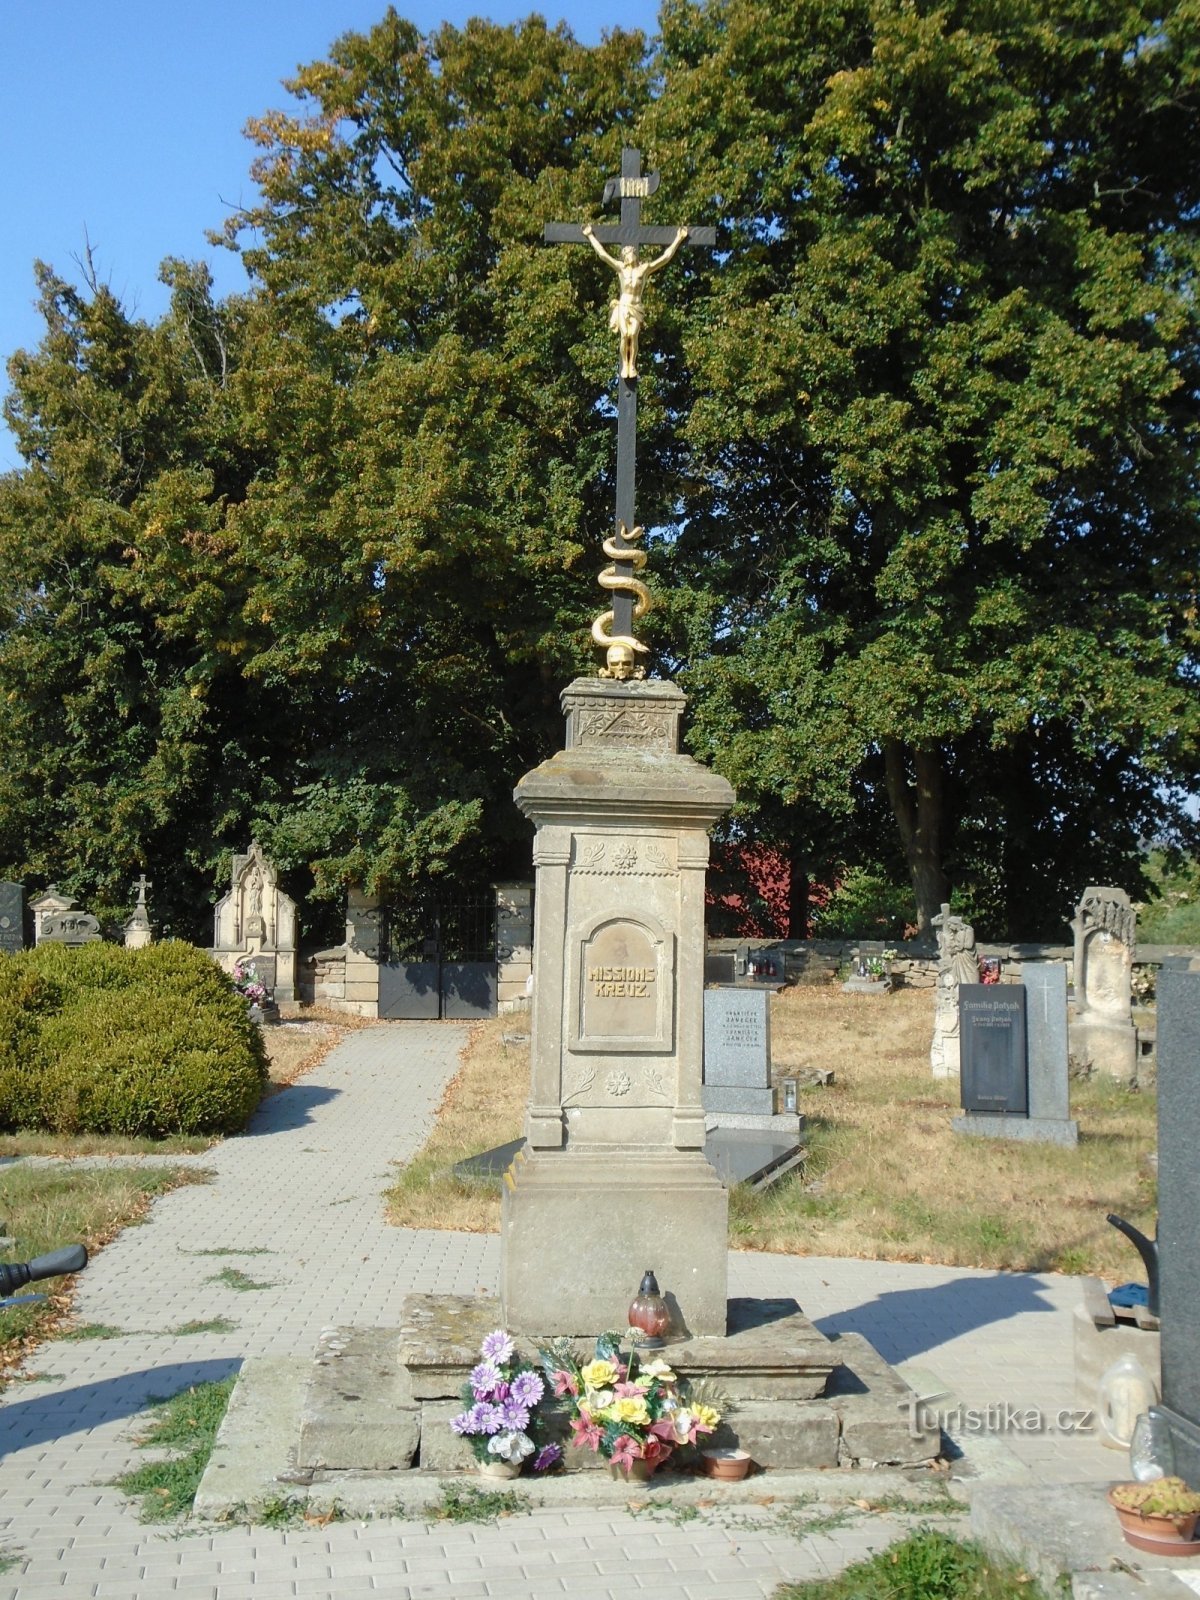 Cruz da missão no cemitério (Zaloňov, 17.8.2018/XNUMX/XNUMX)